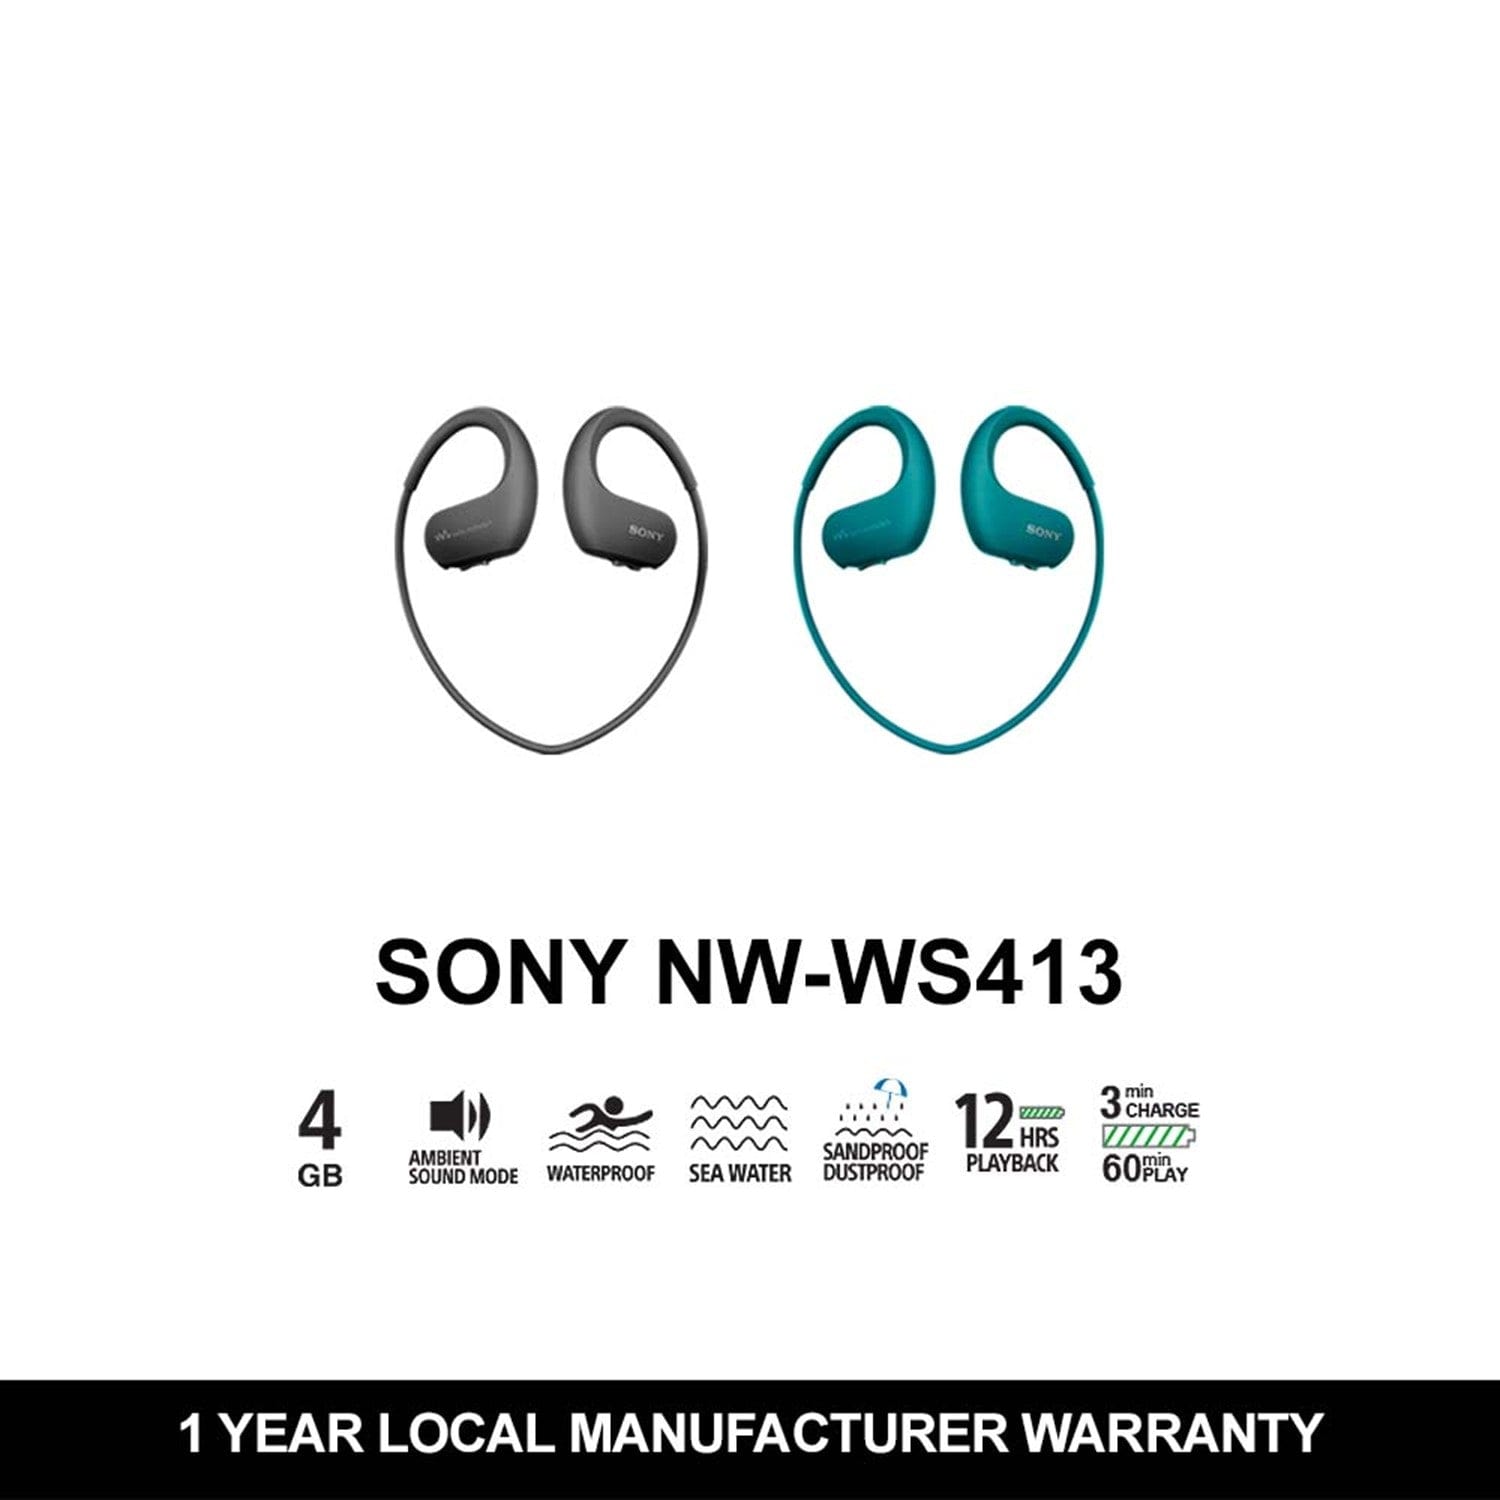 Sony NW-WS413 Waterproof and Dustproof Walkman Headphones (4GB)